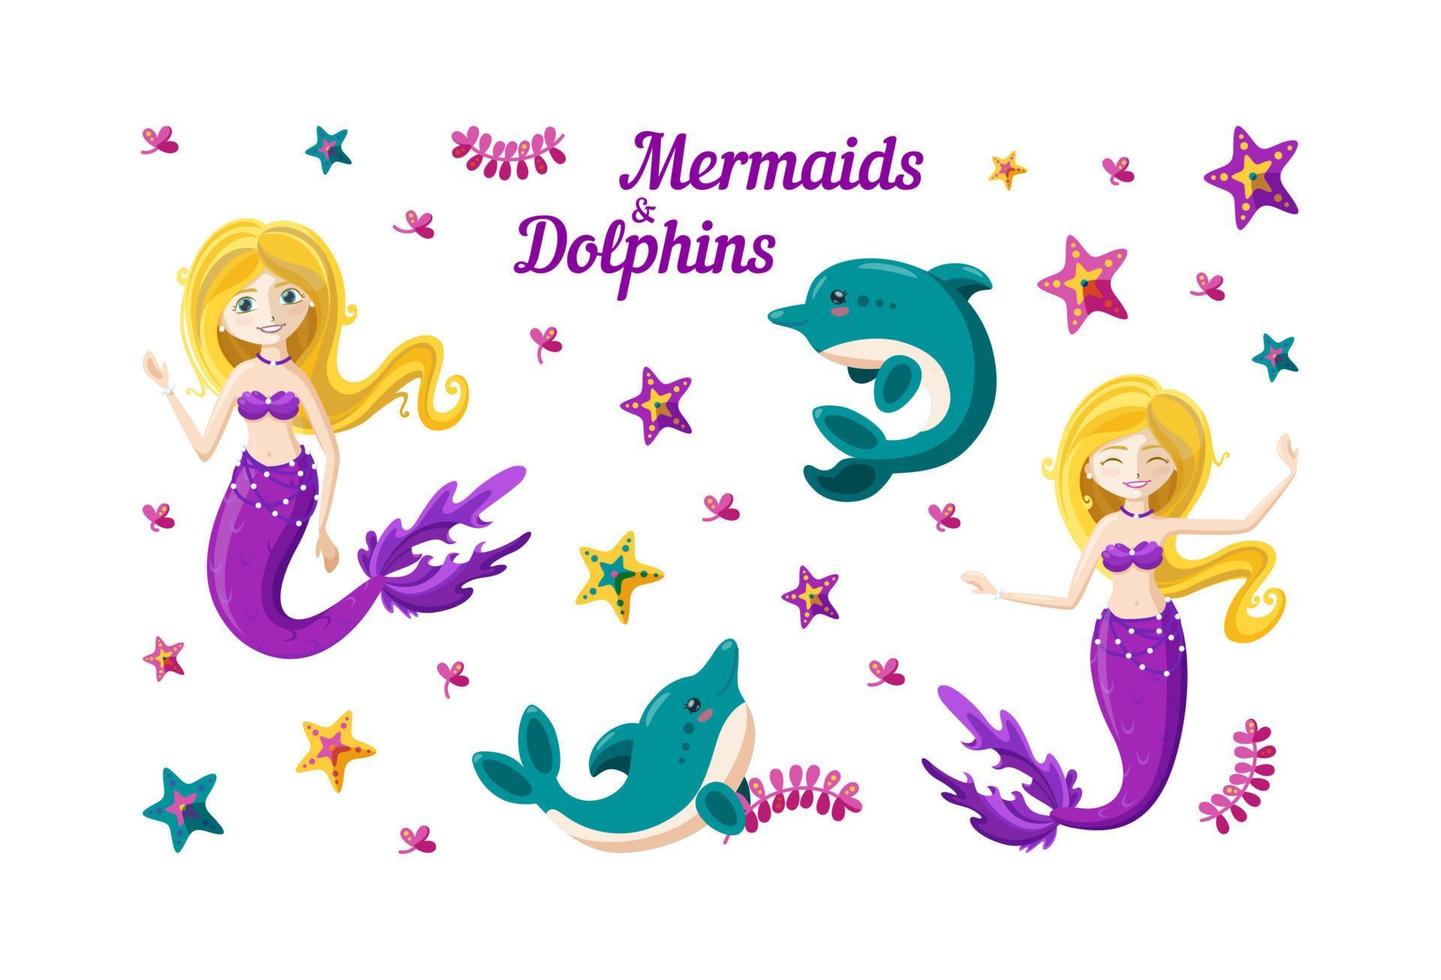 sjöjungfru, delfiner, tång och färgrik sjöstjärna i stor uppsättning. sjöjungfru med gyllene hår. vektor illustration av fantasi under vattnet värld.